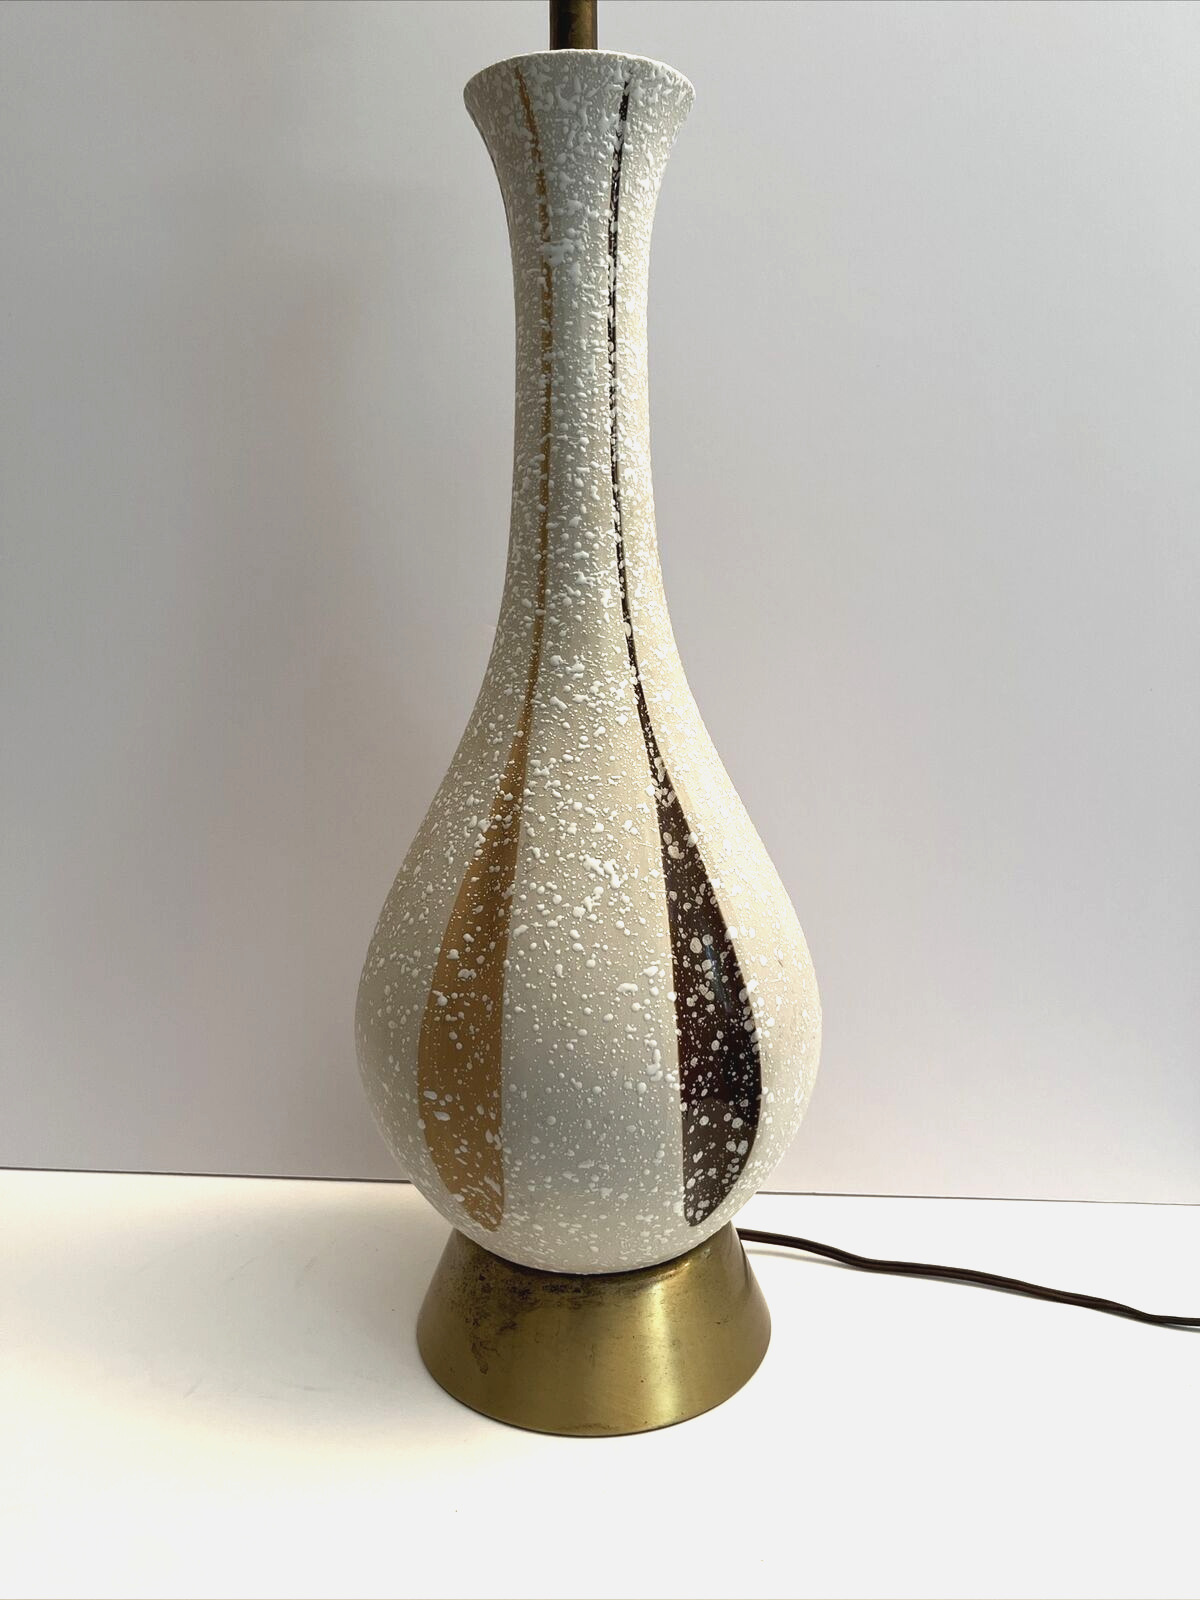 Vintage Quartite Mid-century Modern Ceramic Genie Table Lamp 1960s Atomic Retro